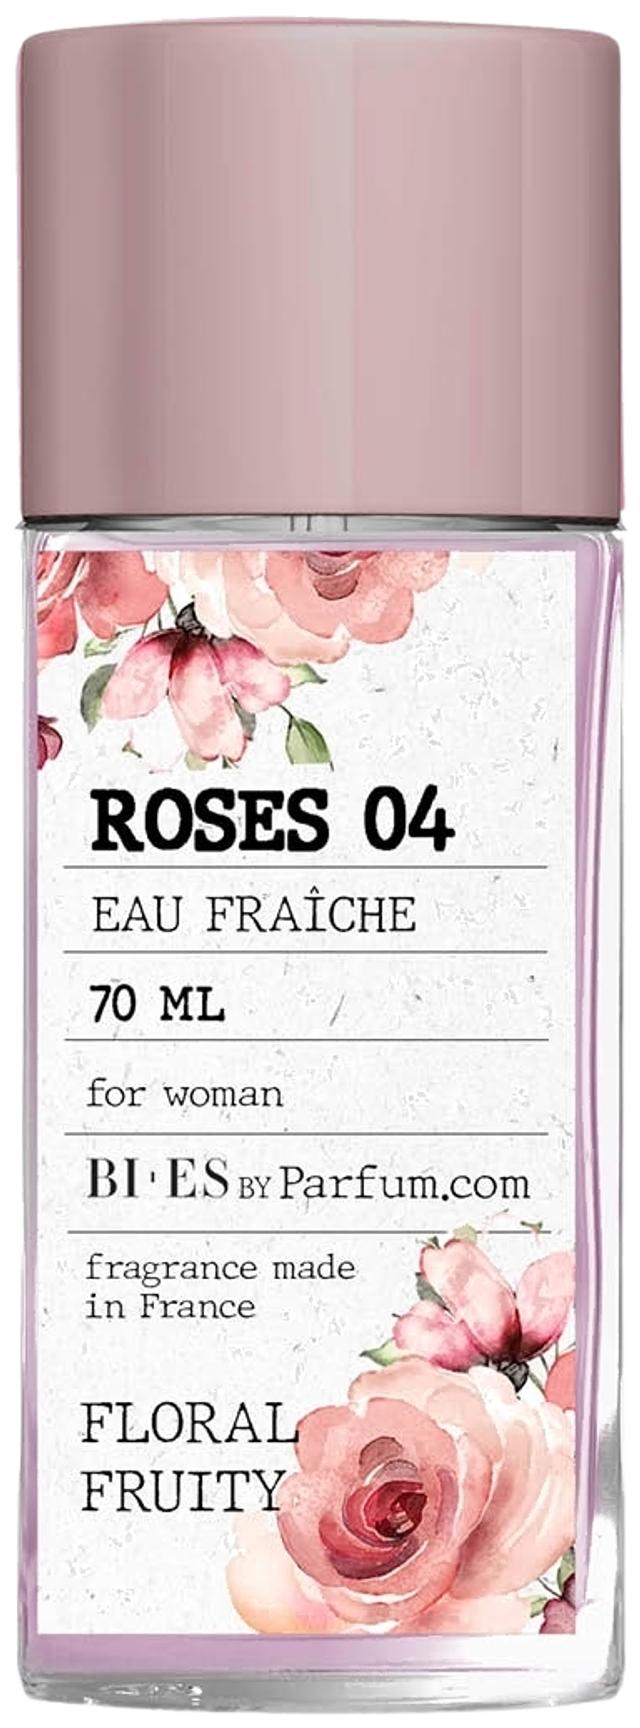 BI-ES Roses 04 Eau Fraiche for Woman 70ml